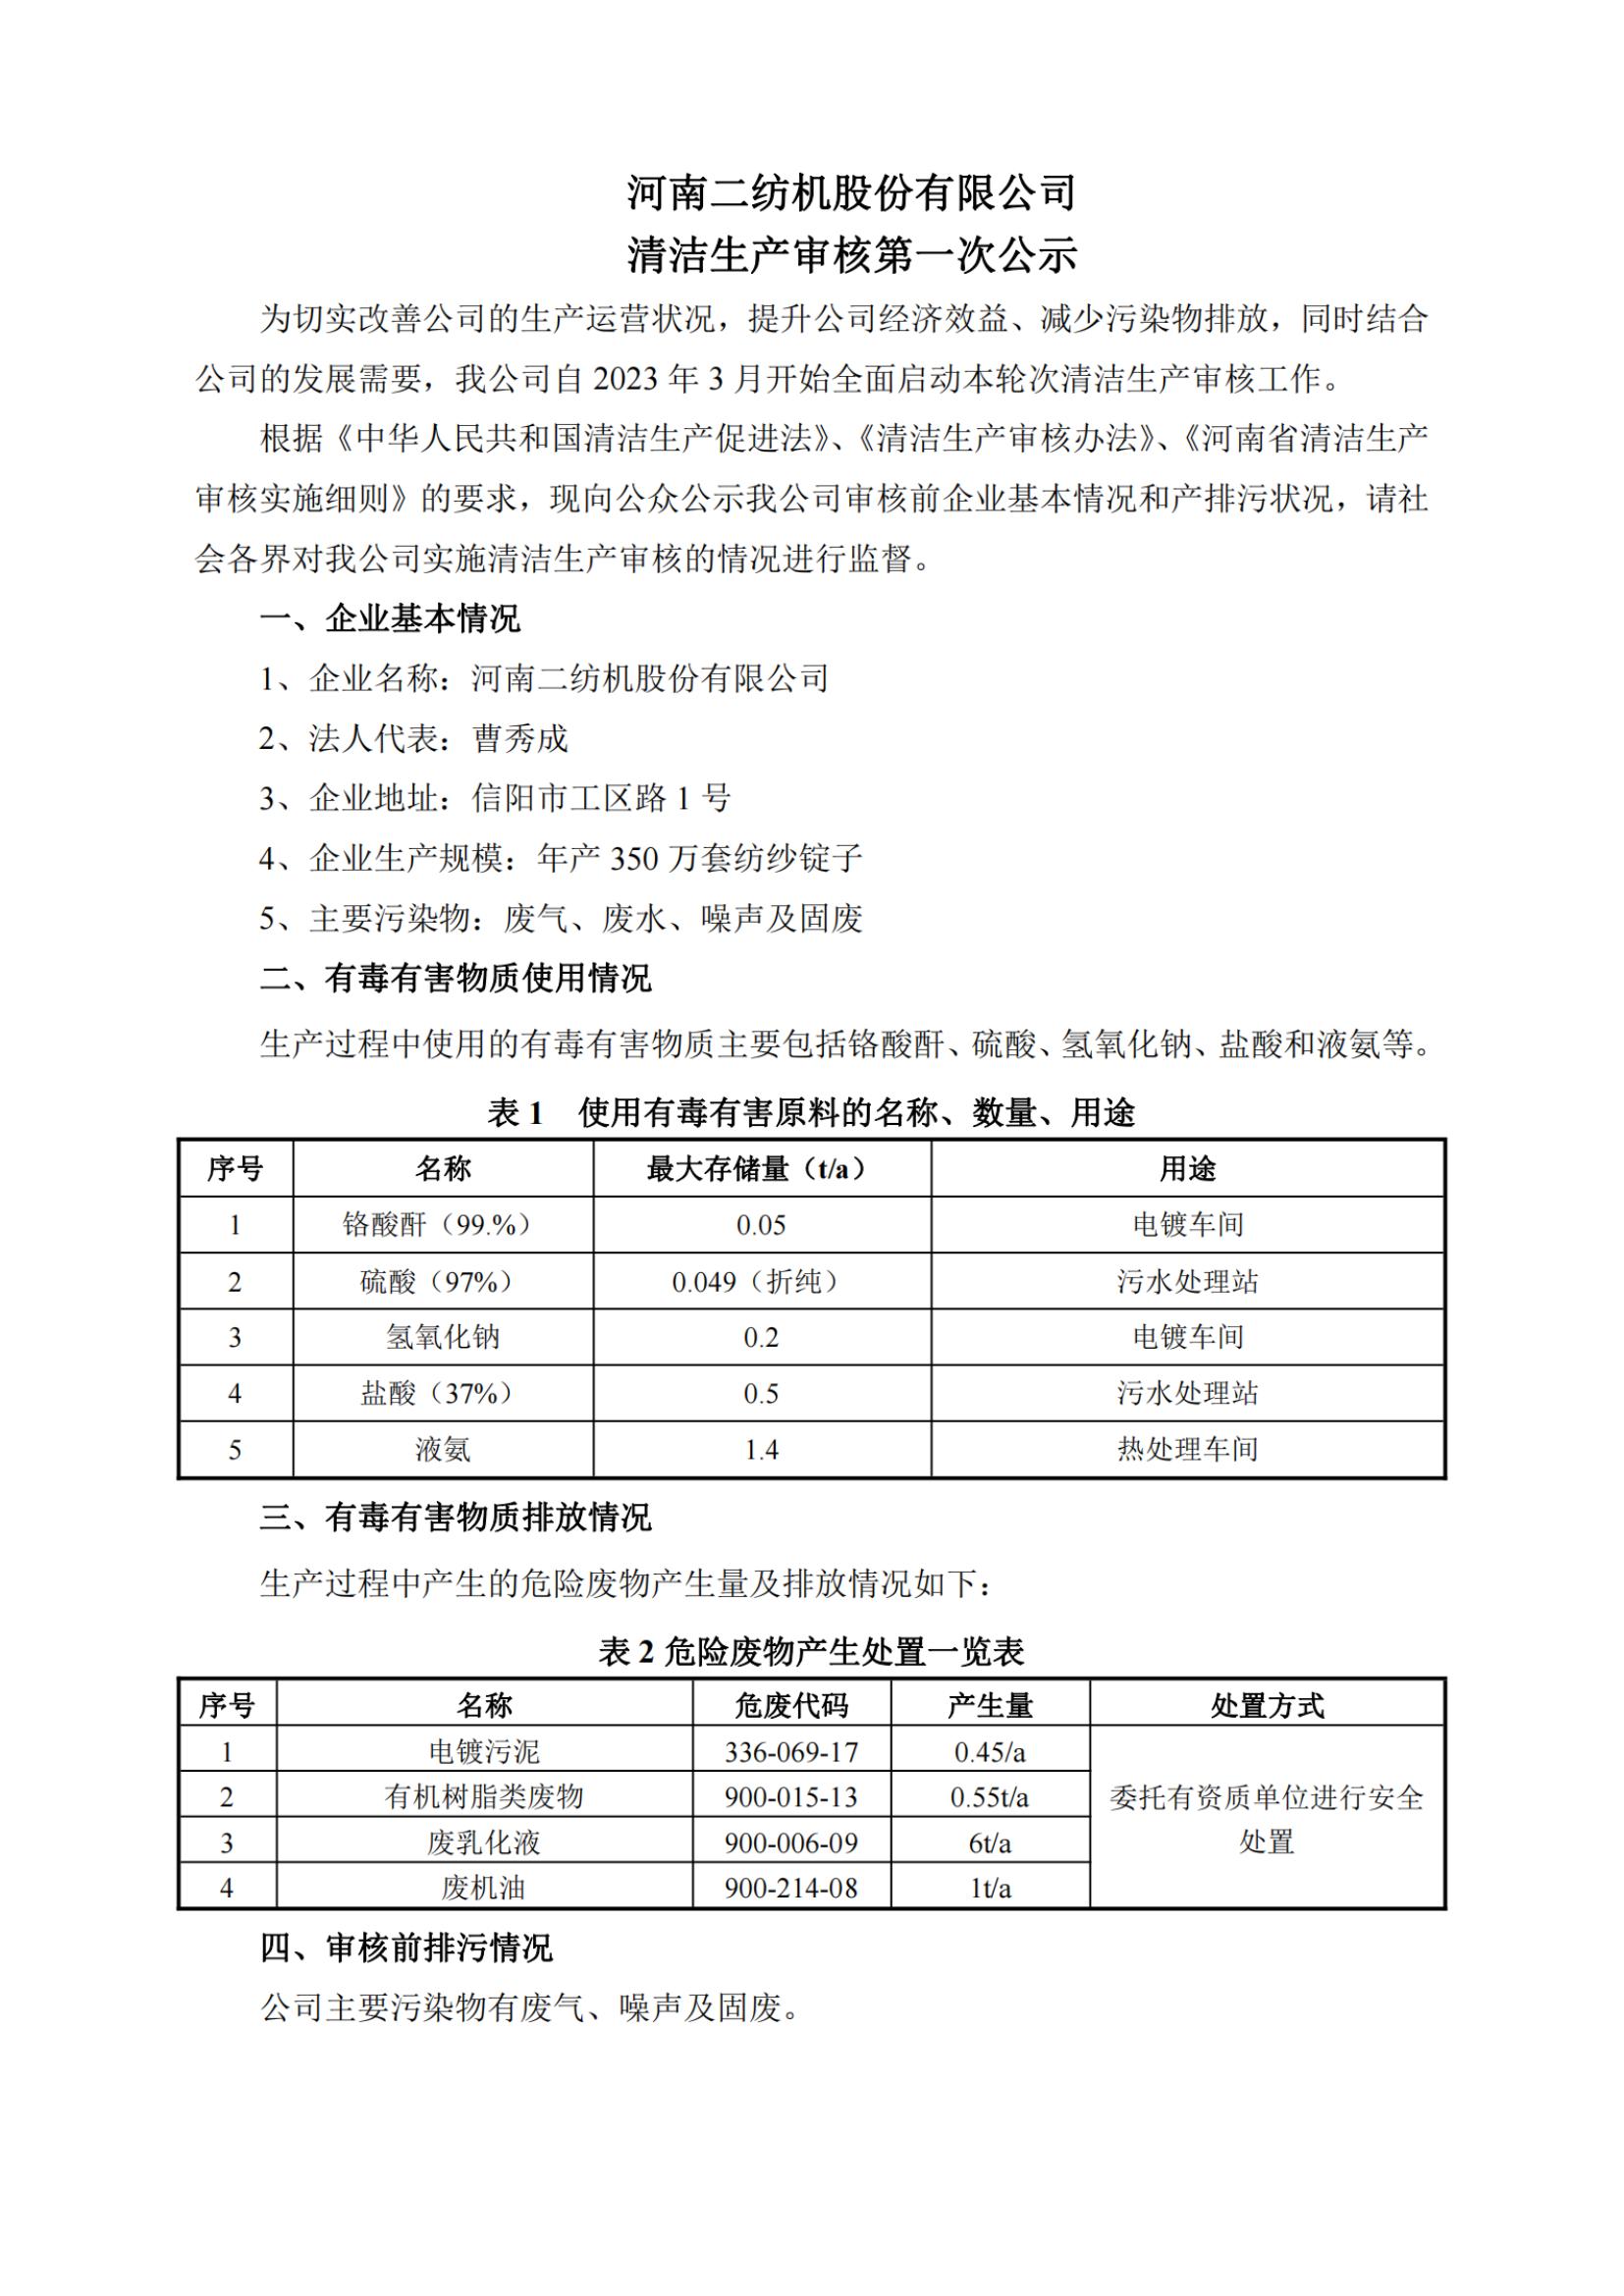 河南二纺机股份有限公司清洁生产审核第一次公示